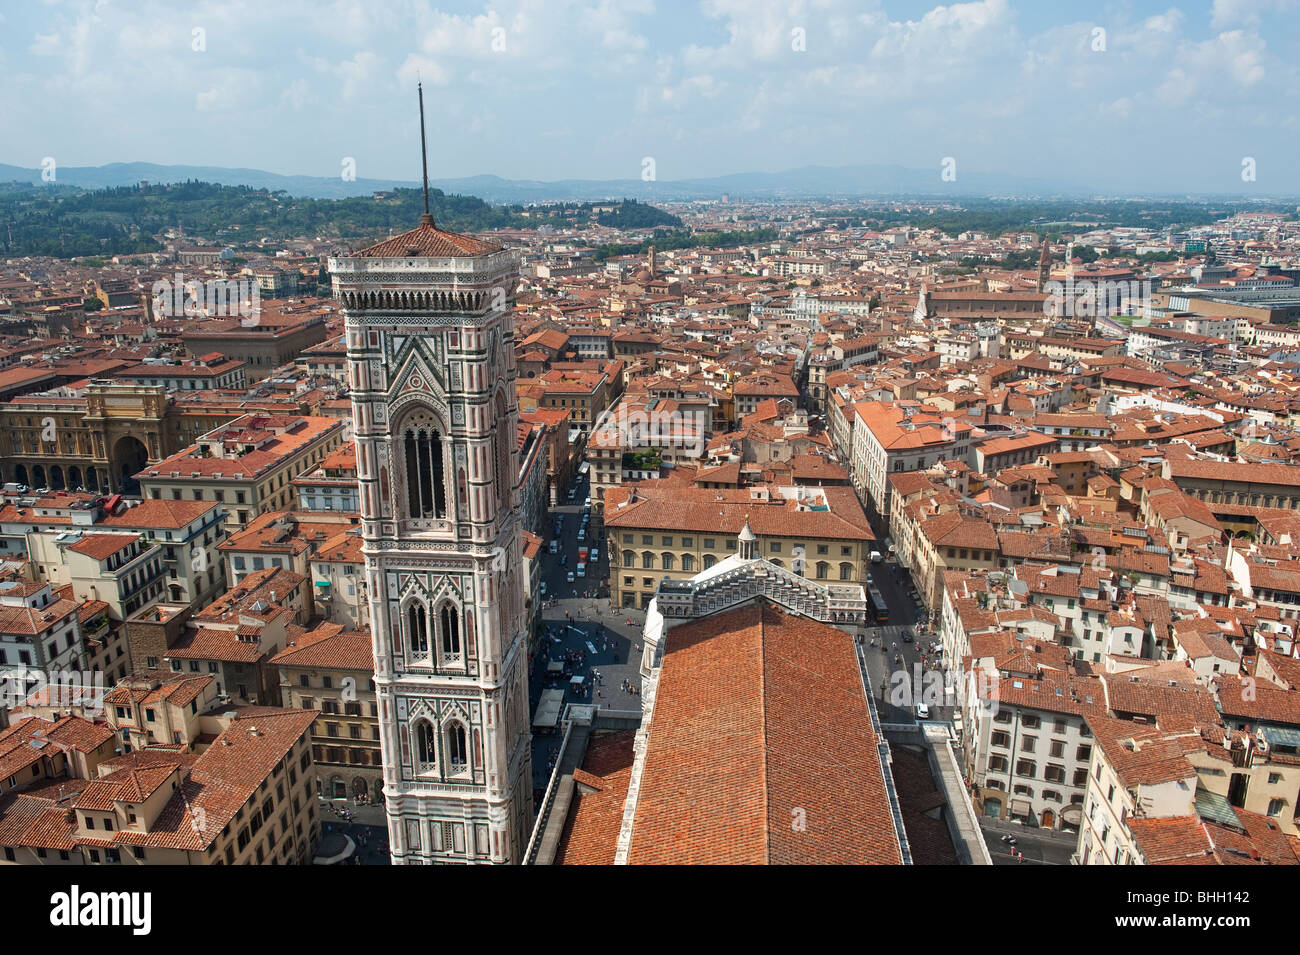 Incroyable vue sur Florence depuis la coupole de la Basilique de Santa Maria del Fiore ou Duomo de Florence. Banque D'Images